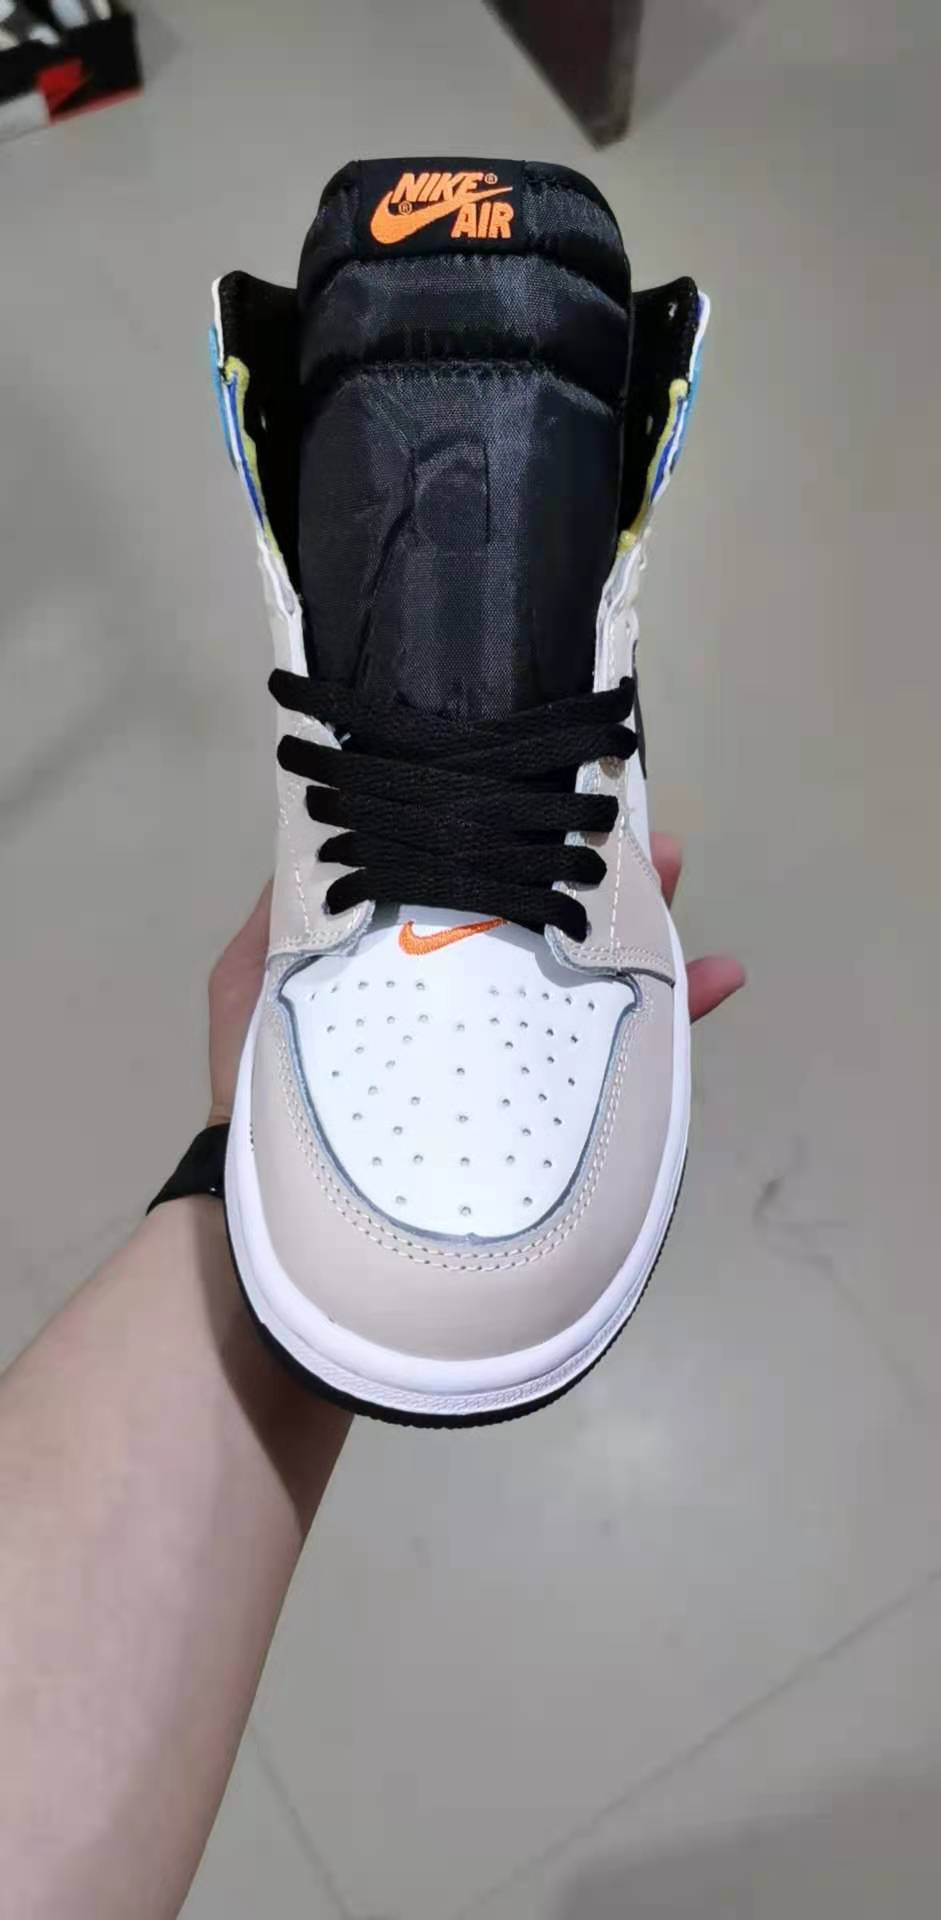 Air Jordan 1 Retro Sneakers For Men in 243588, cheap Jordan1, only $65!